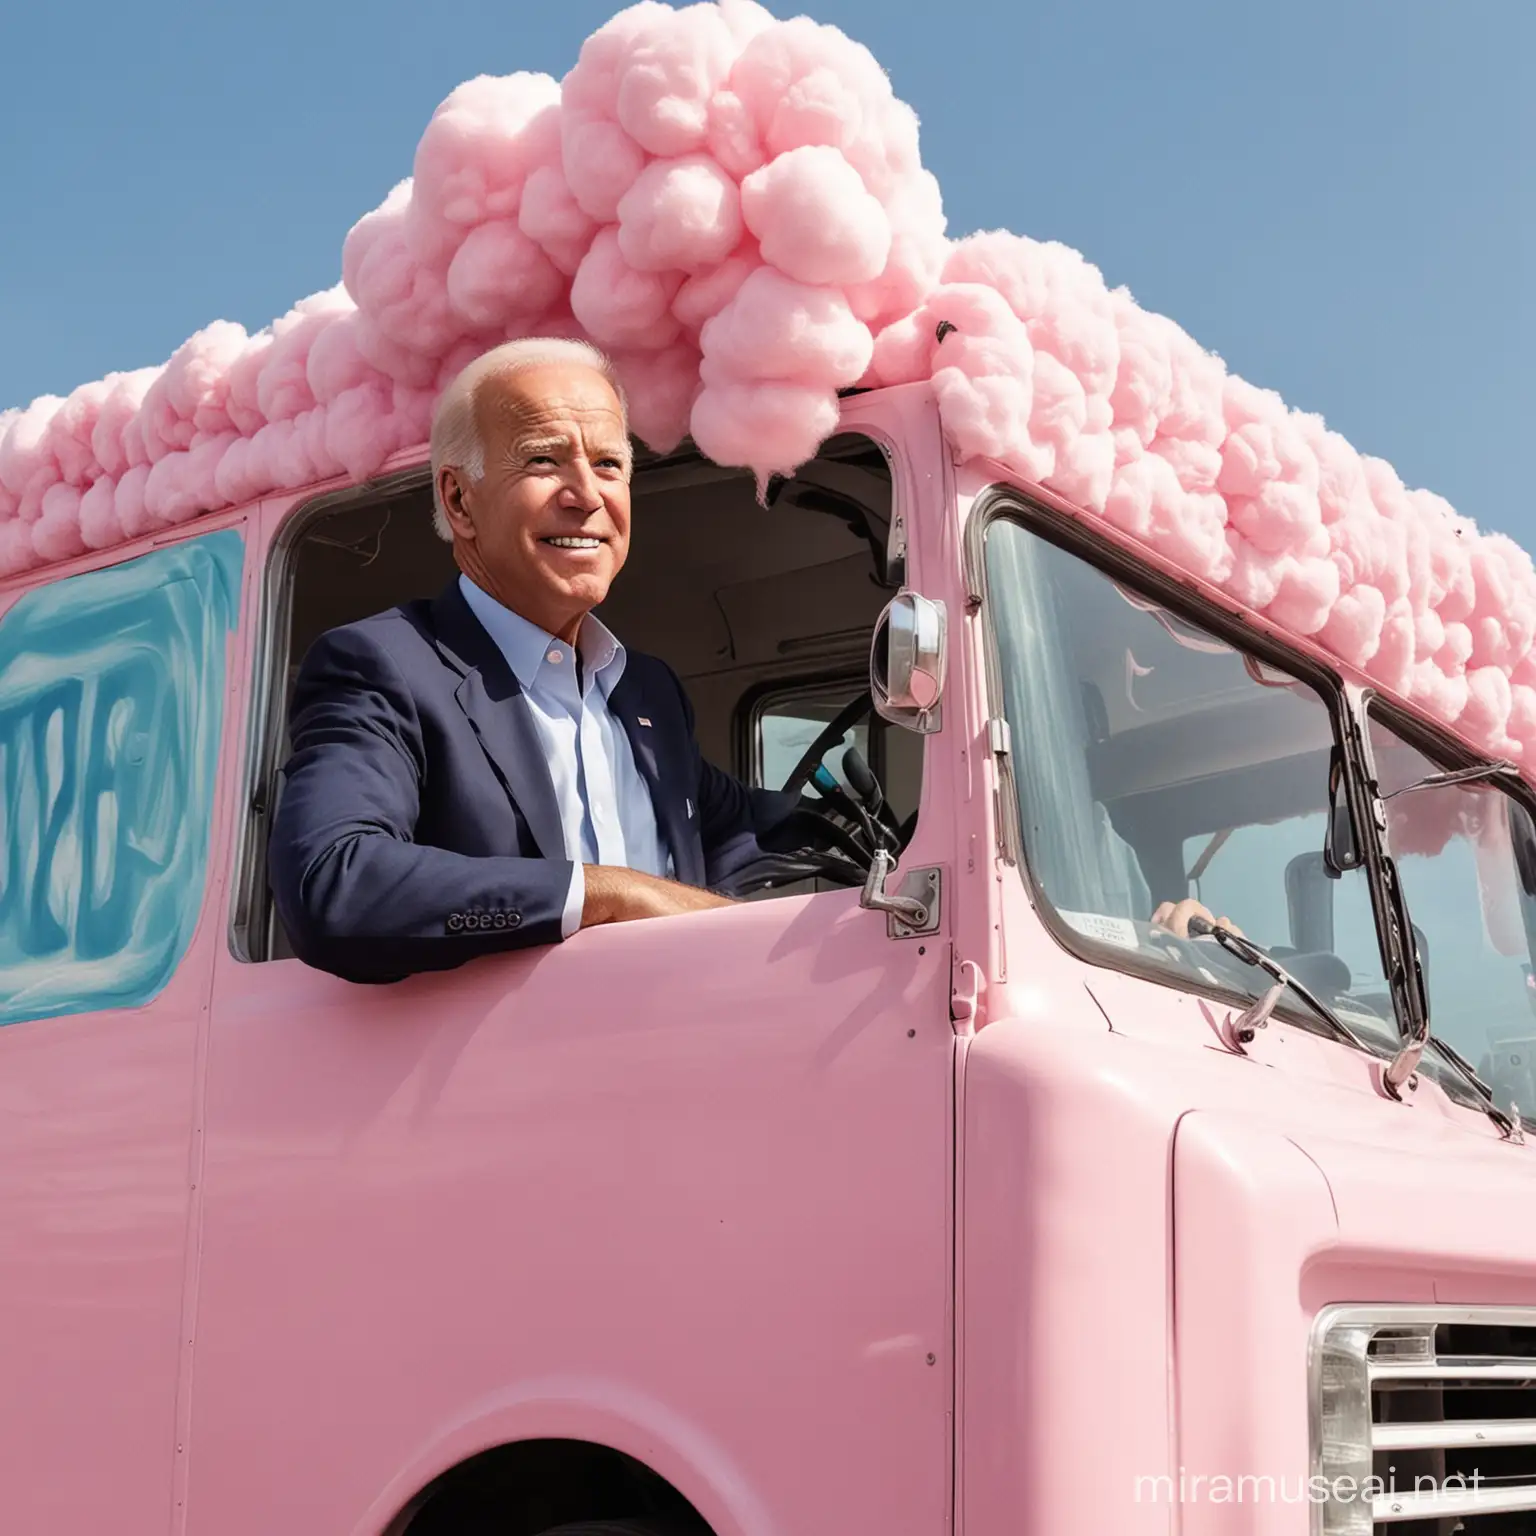 Joe Biden as a cotton candy's truck driver. 